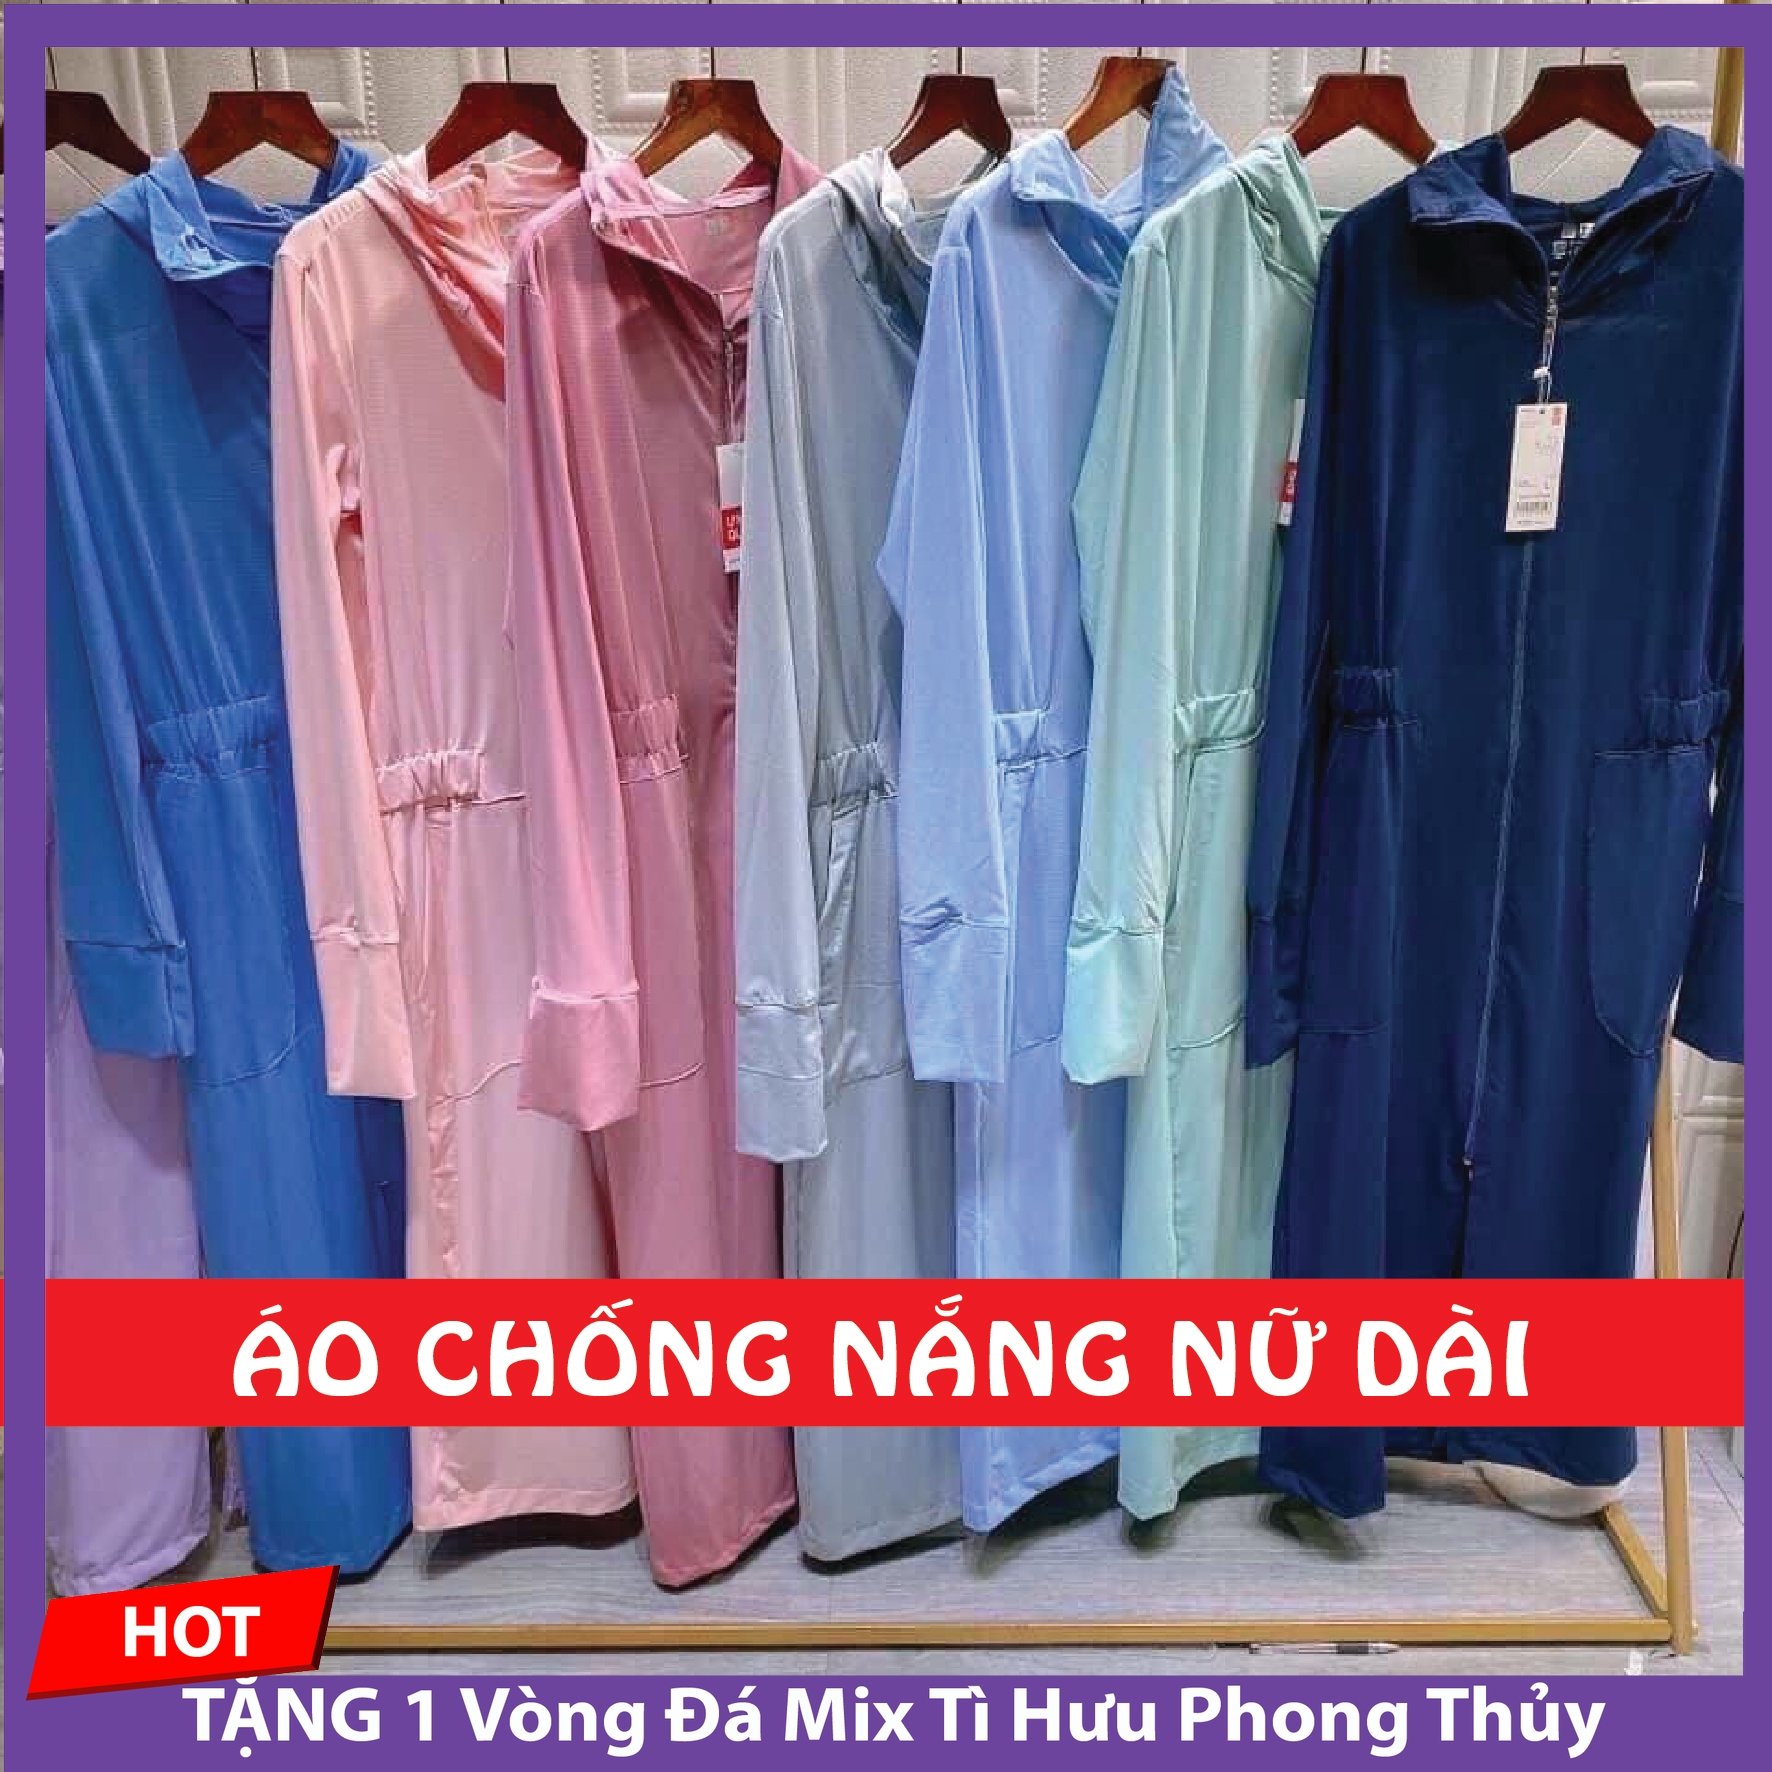 Top 9 cửa hàng bán áo chống nắng đẹp và nổi tiếng nhất tại Hà Nội   AllTopvn